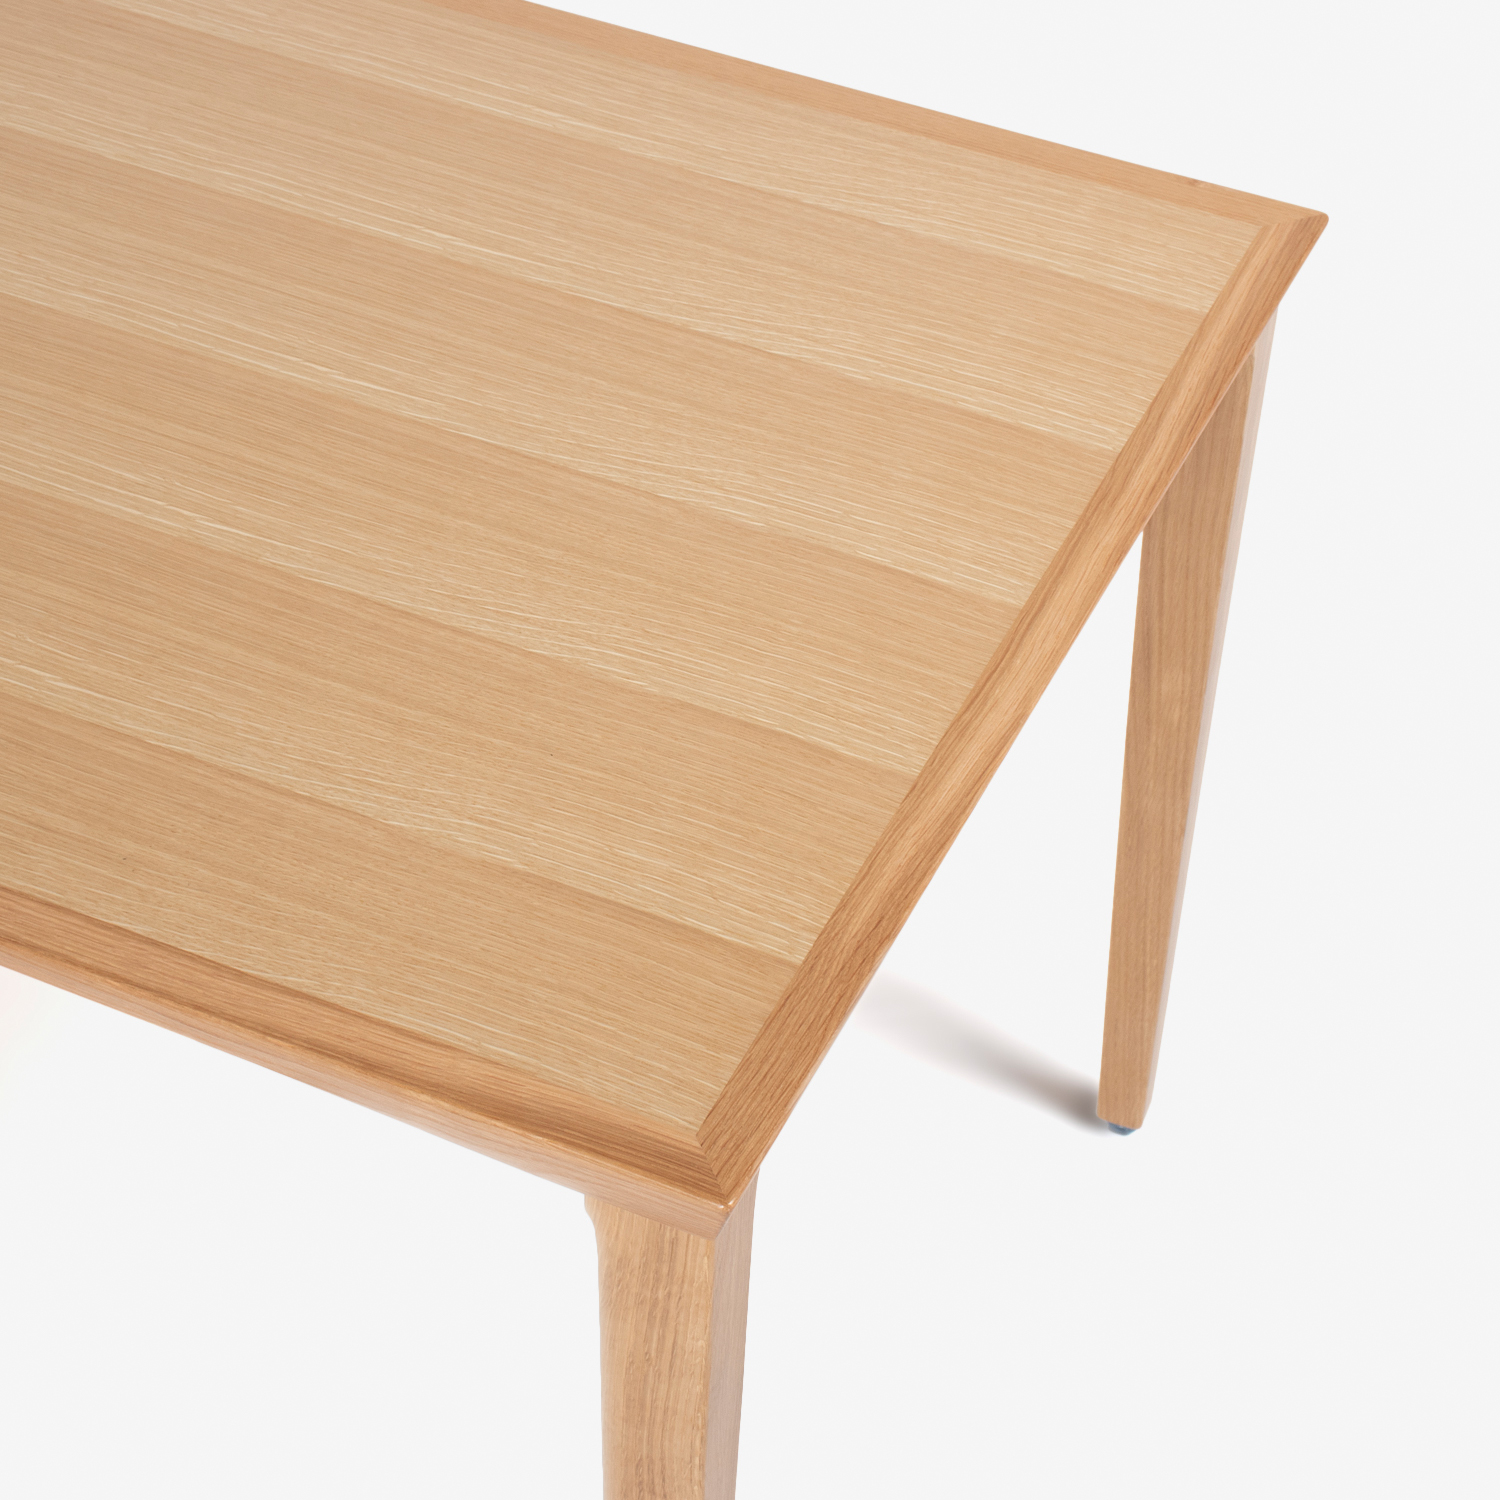 秋田木工 ダイニングセット テーブル「N-T005」幅85cm正方形+チェア「N005 UU2」ナラ材 ホワイトオーク色